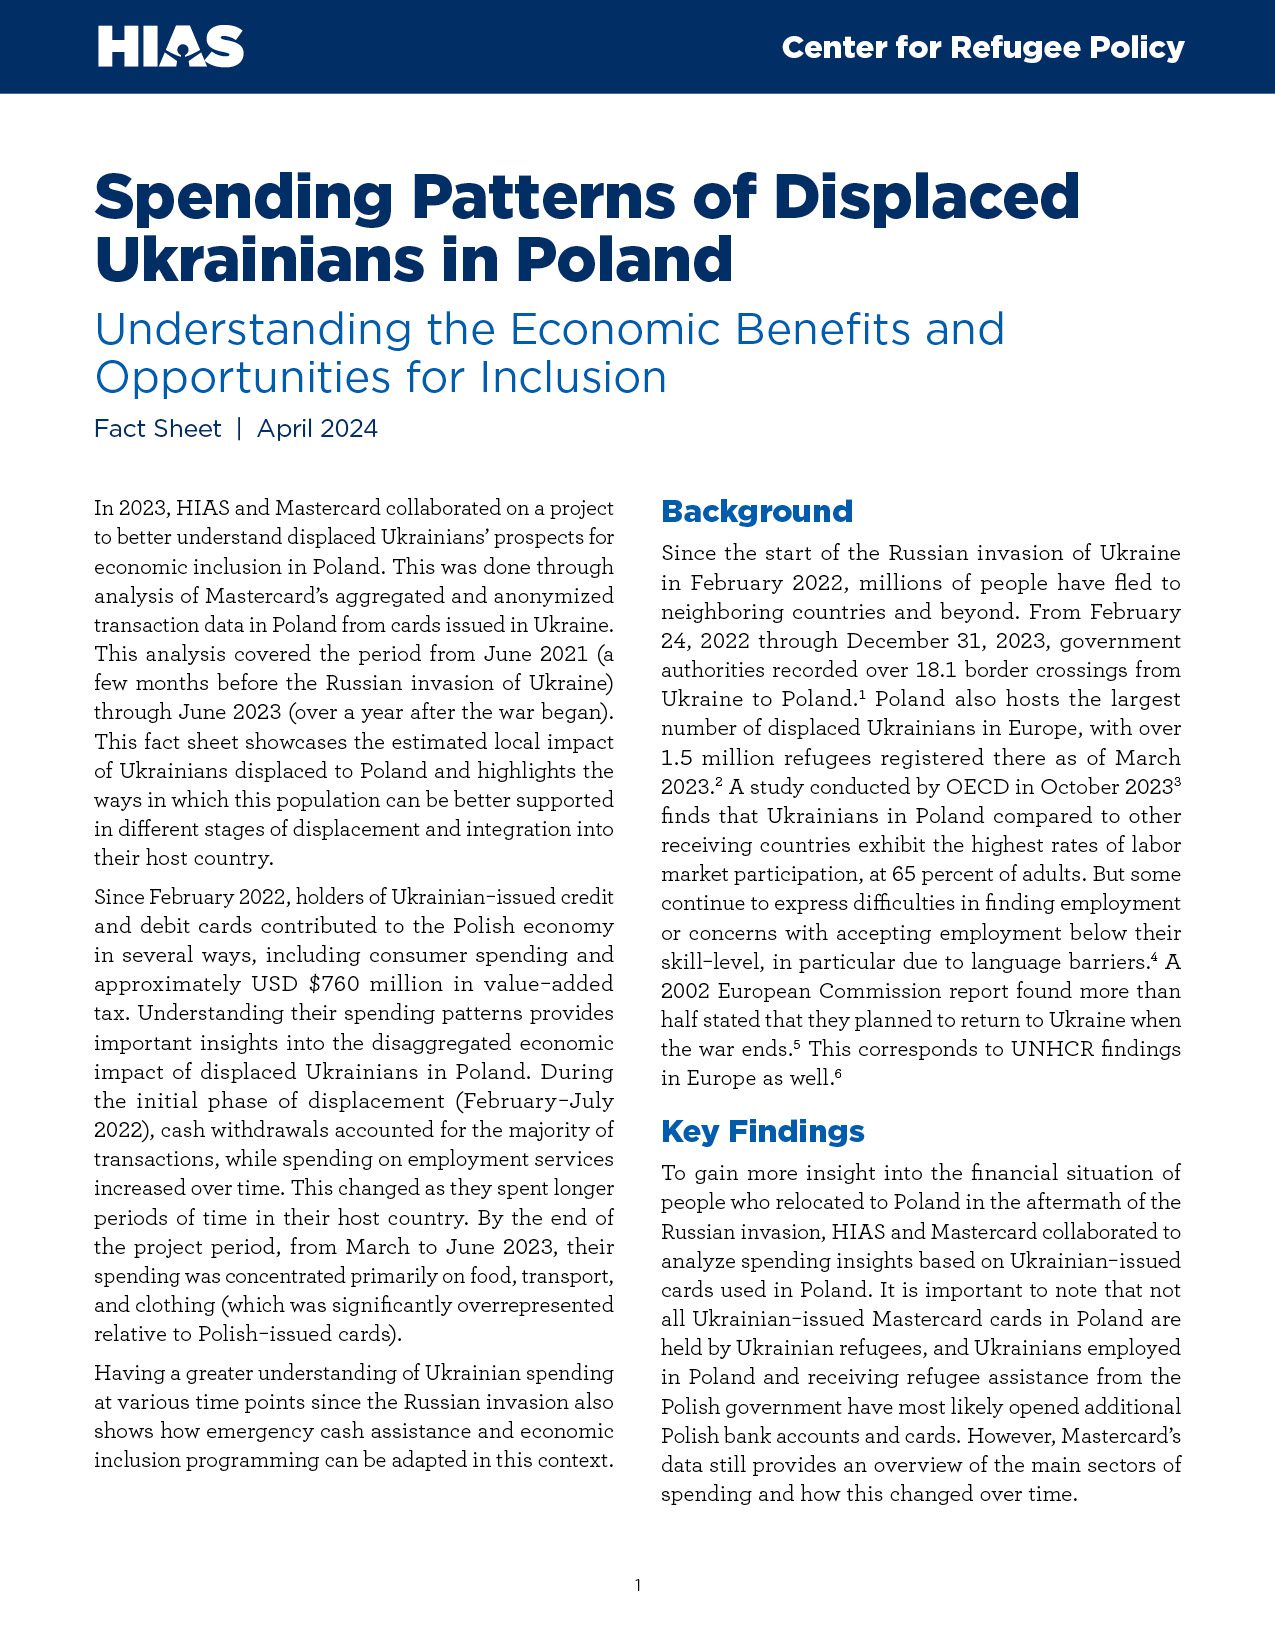 Patrones de gasto de los ucranianos desplazados en Polonia